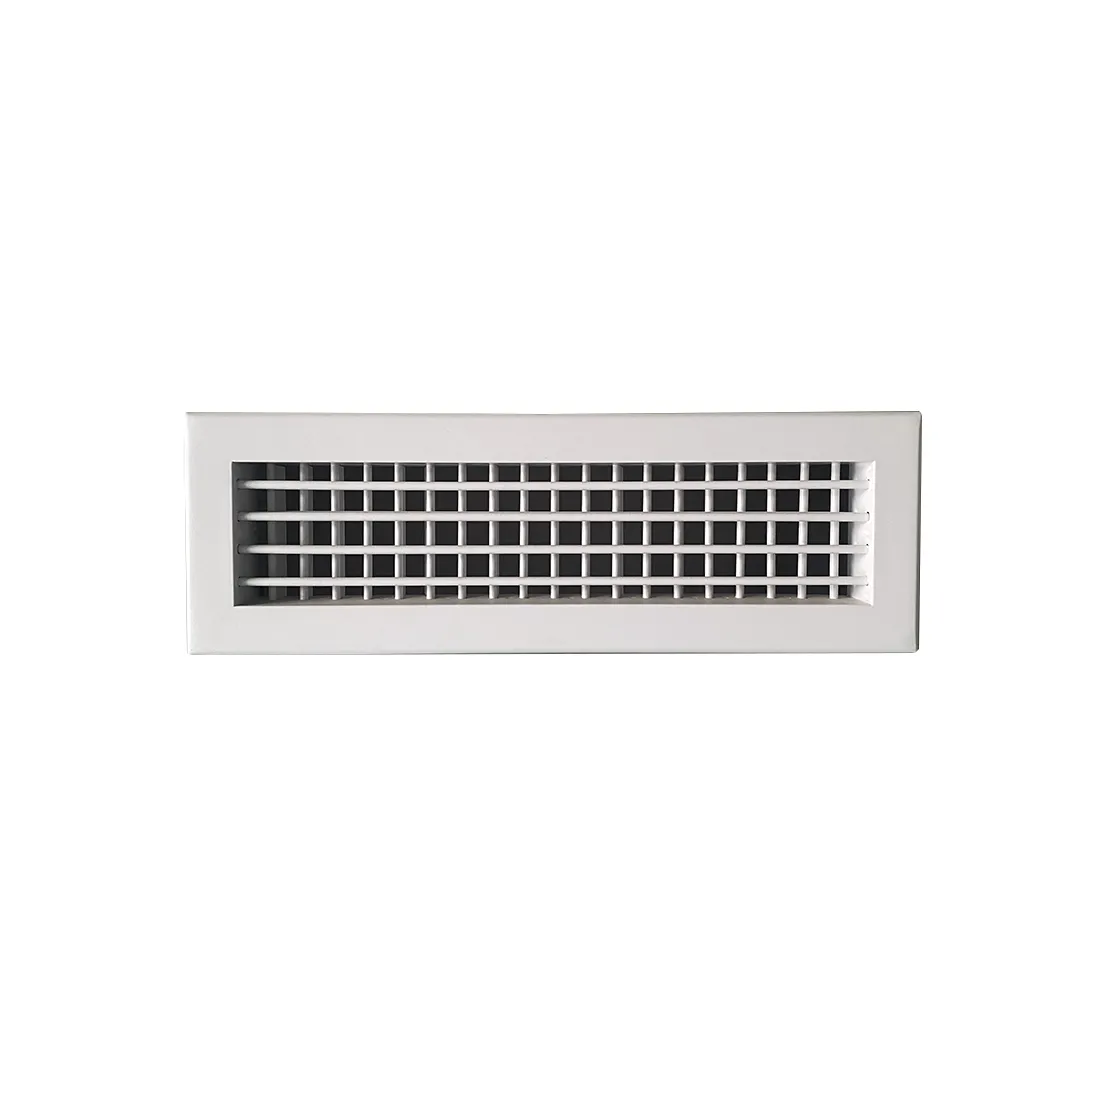 Kisi ventilasi udara dinding aluminium, dapat diatur defleksi ganda ventilasi udara dalam sistem hvac